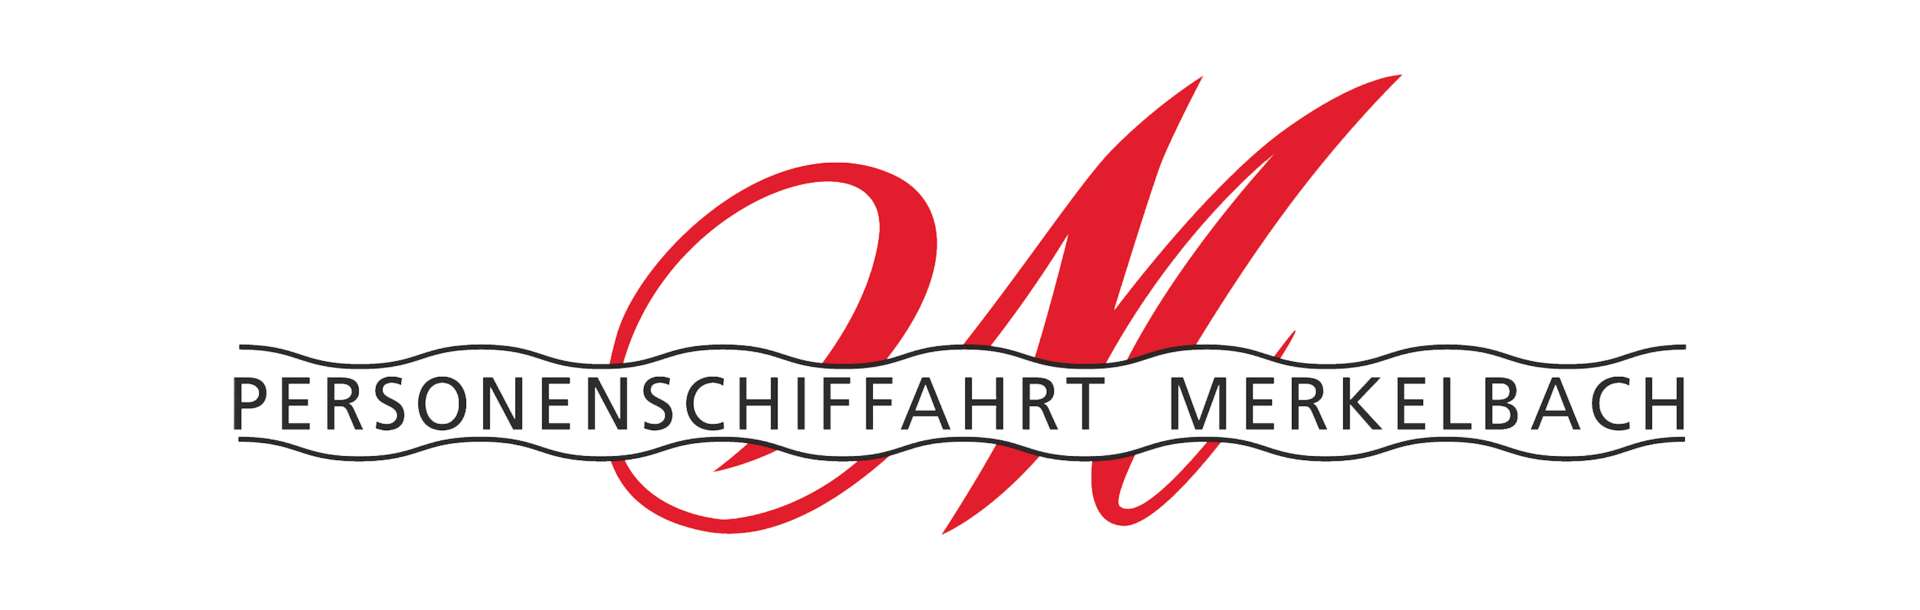 Merkelbach | © Personenschiffahrt Merkelbach GmbH